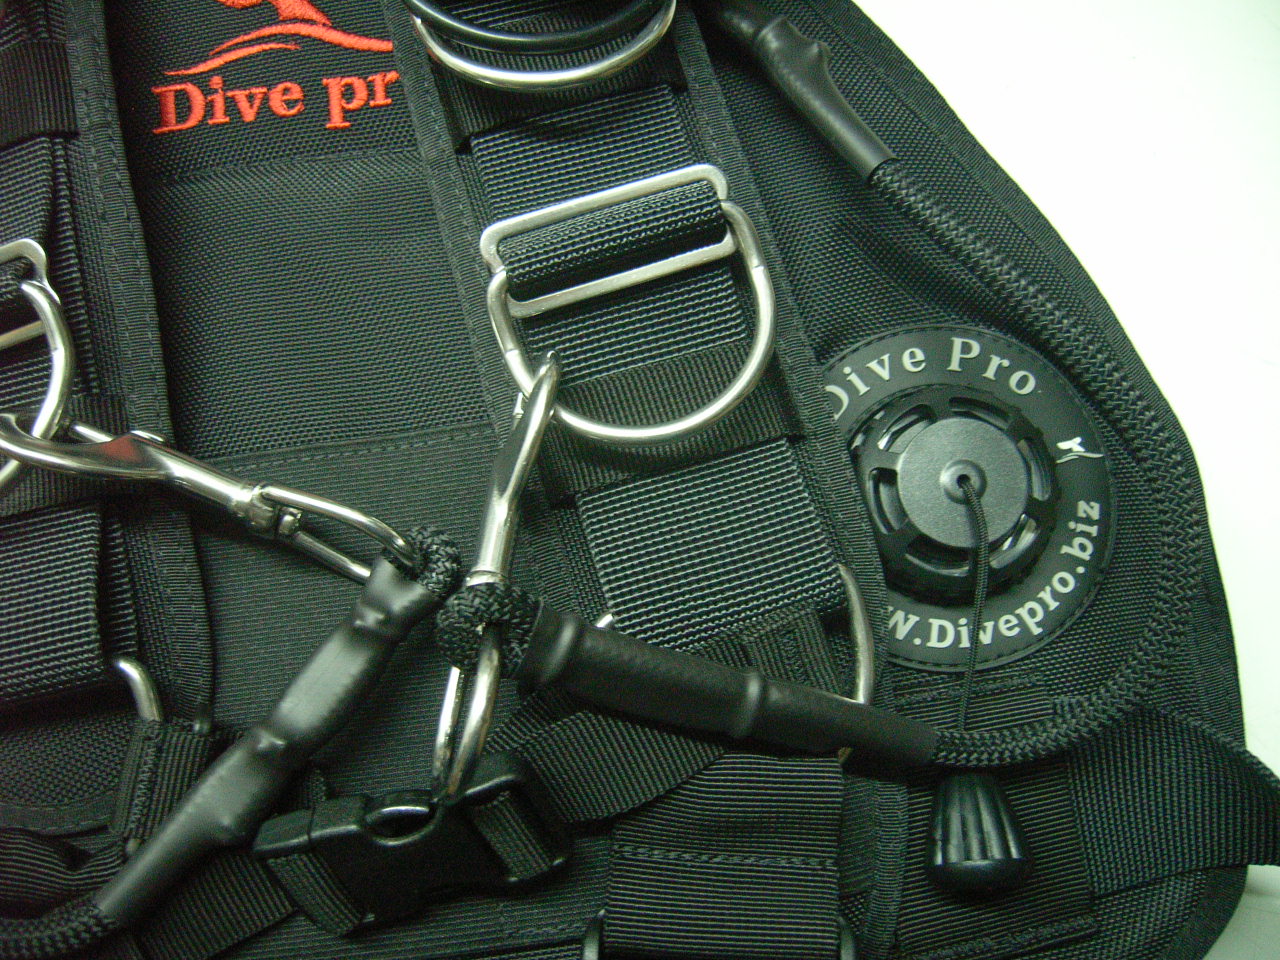 Dive Pro Sidemountjacket "Explorer"